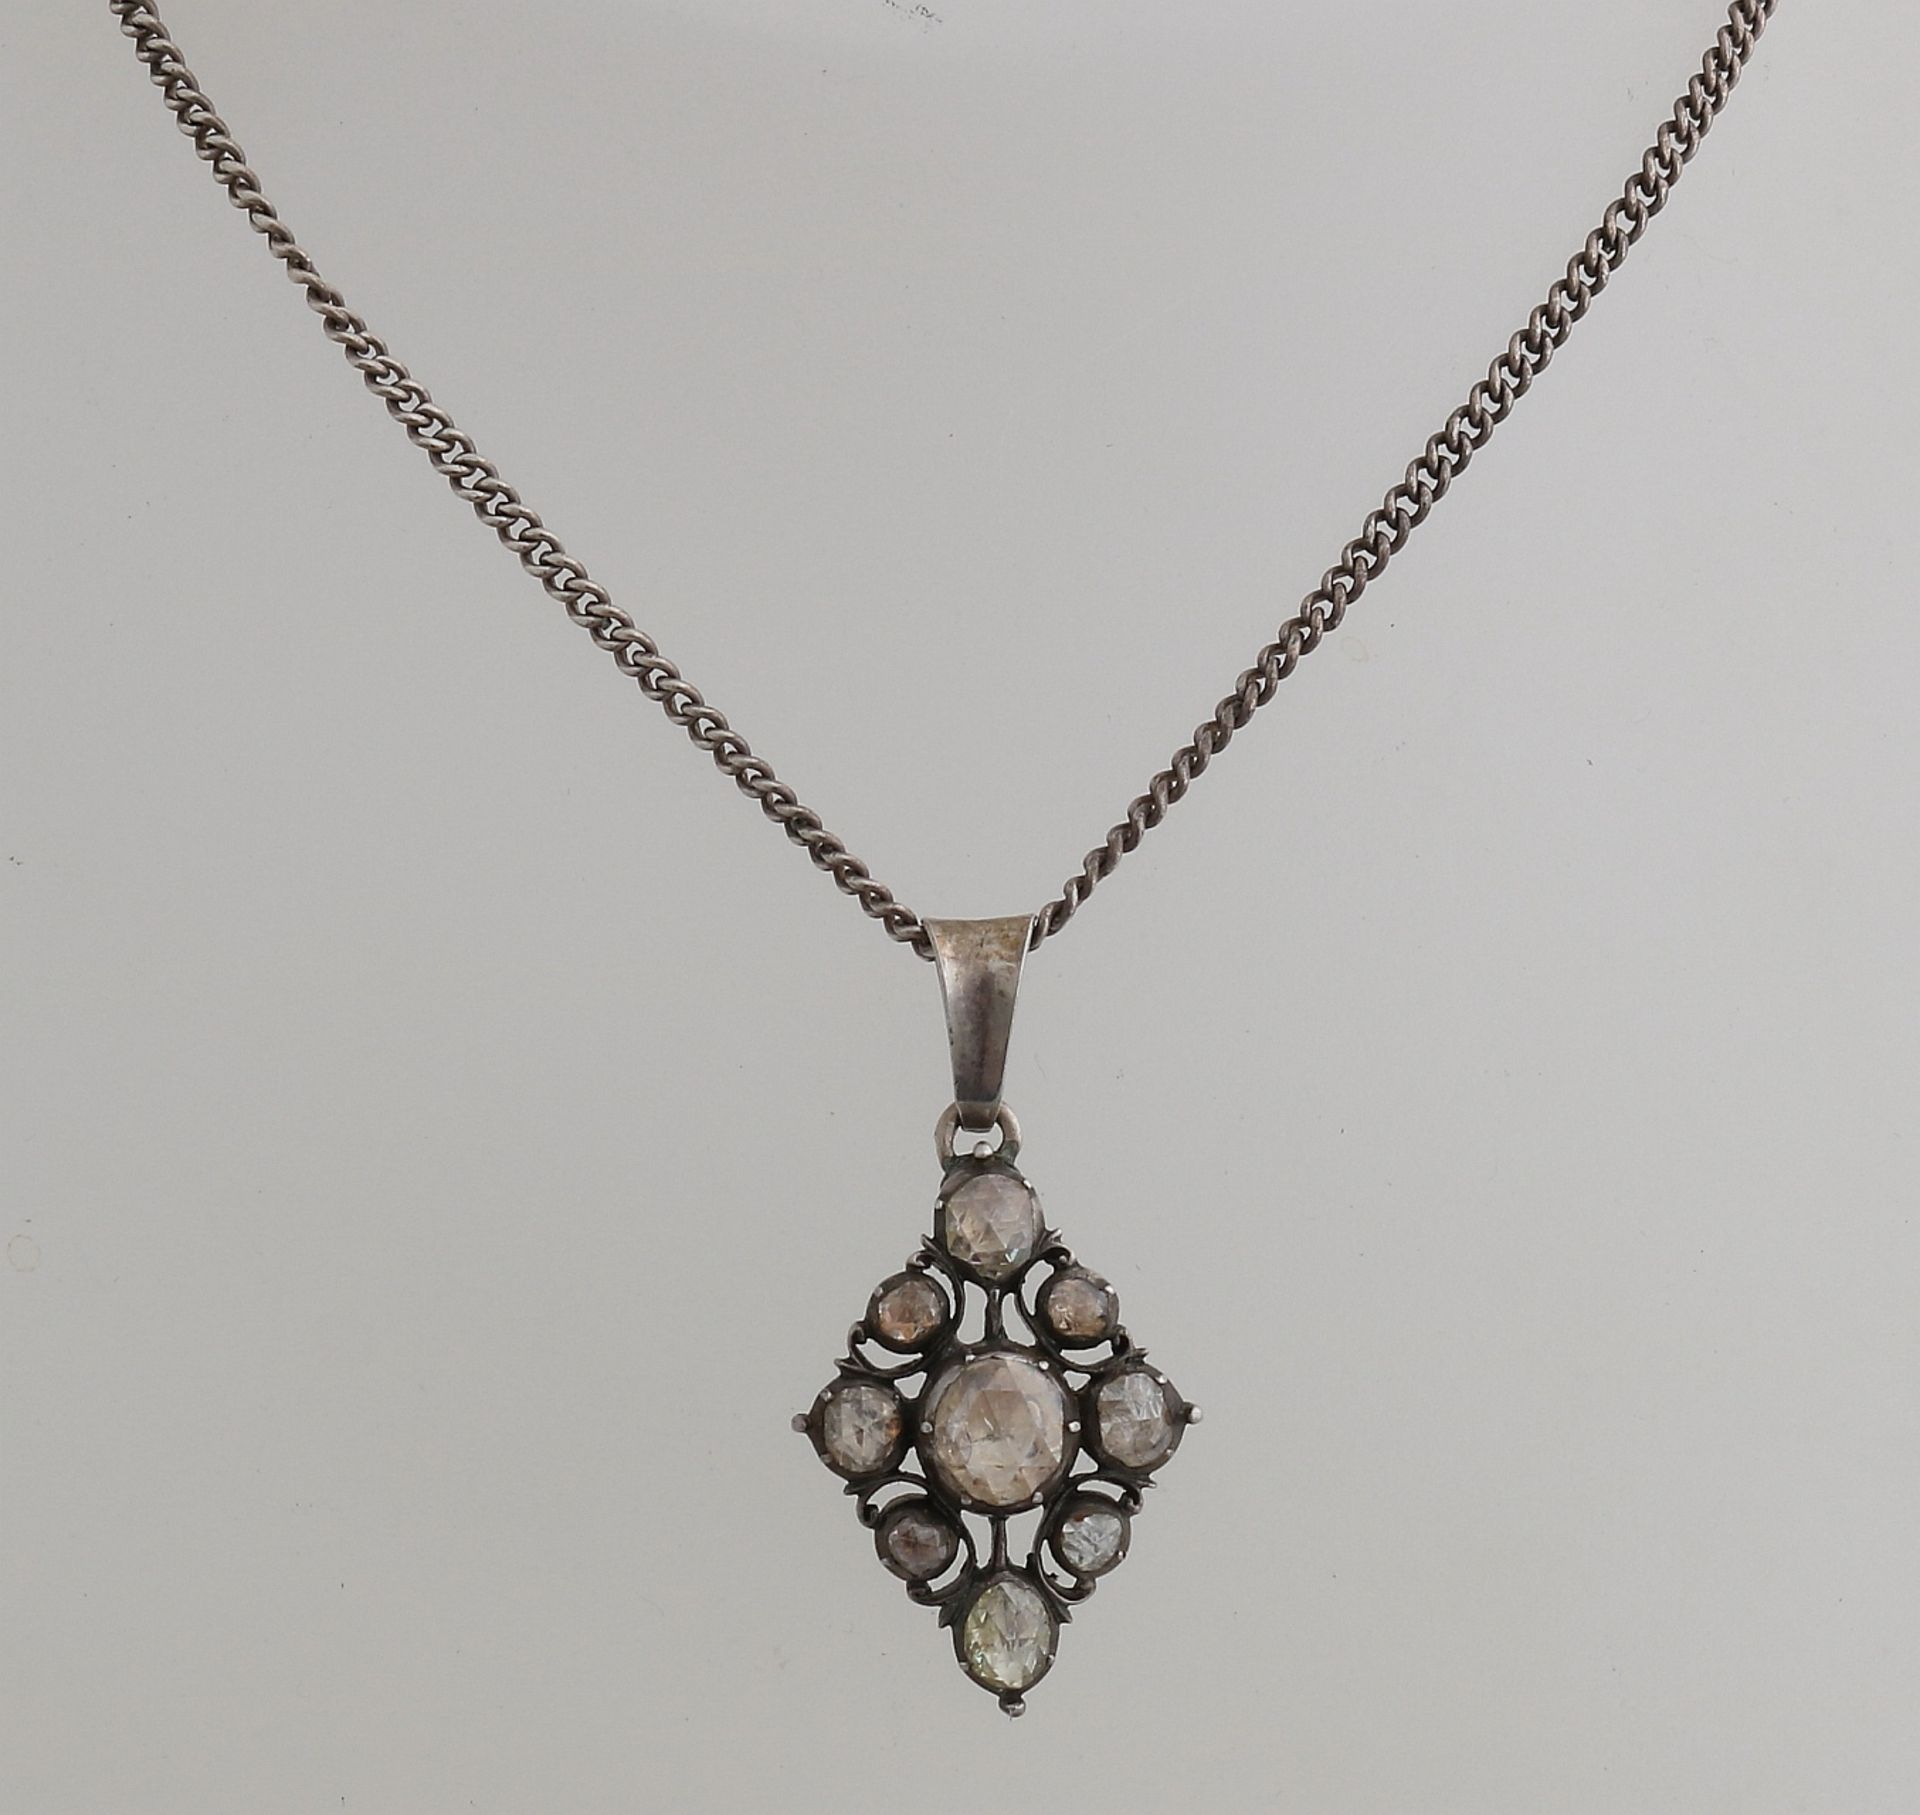 Silber Halskette und Anhänger, 835/000, mit Diamant. Gourmet-Halskette mit rautenförmigem Anhän